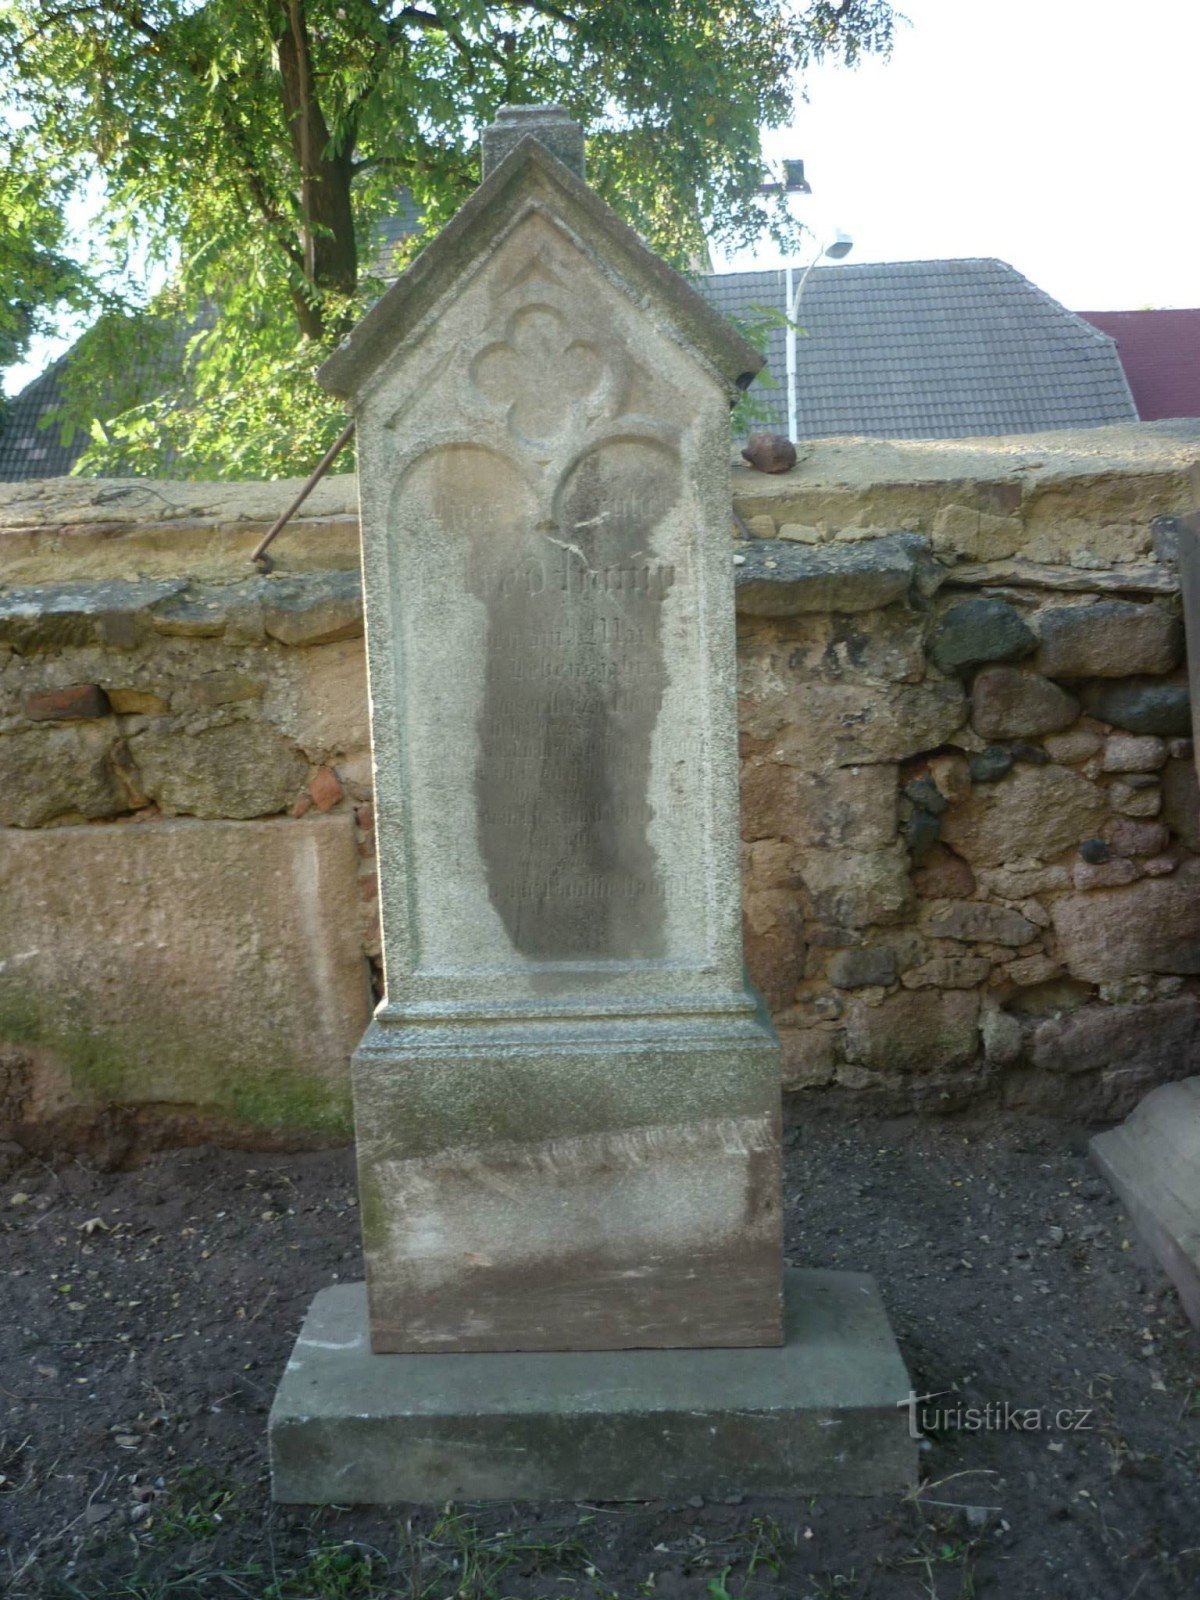 Jedan od restauriranih nadgrobnih spomenika na susjednom groblju